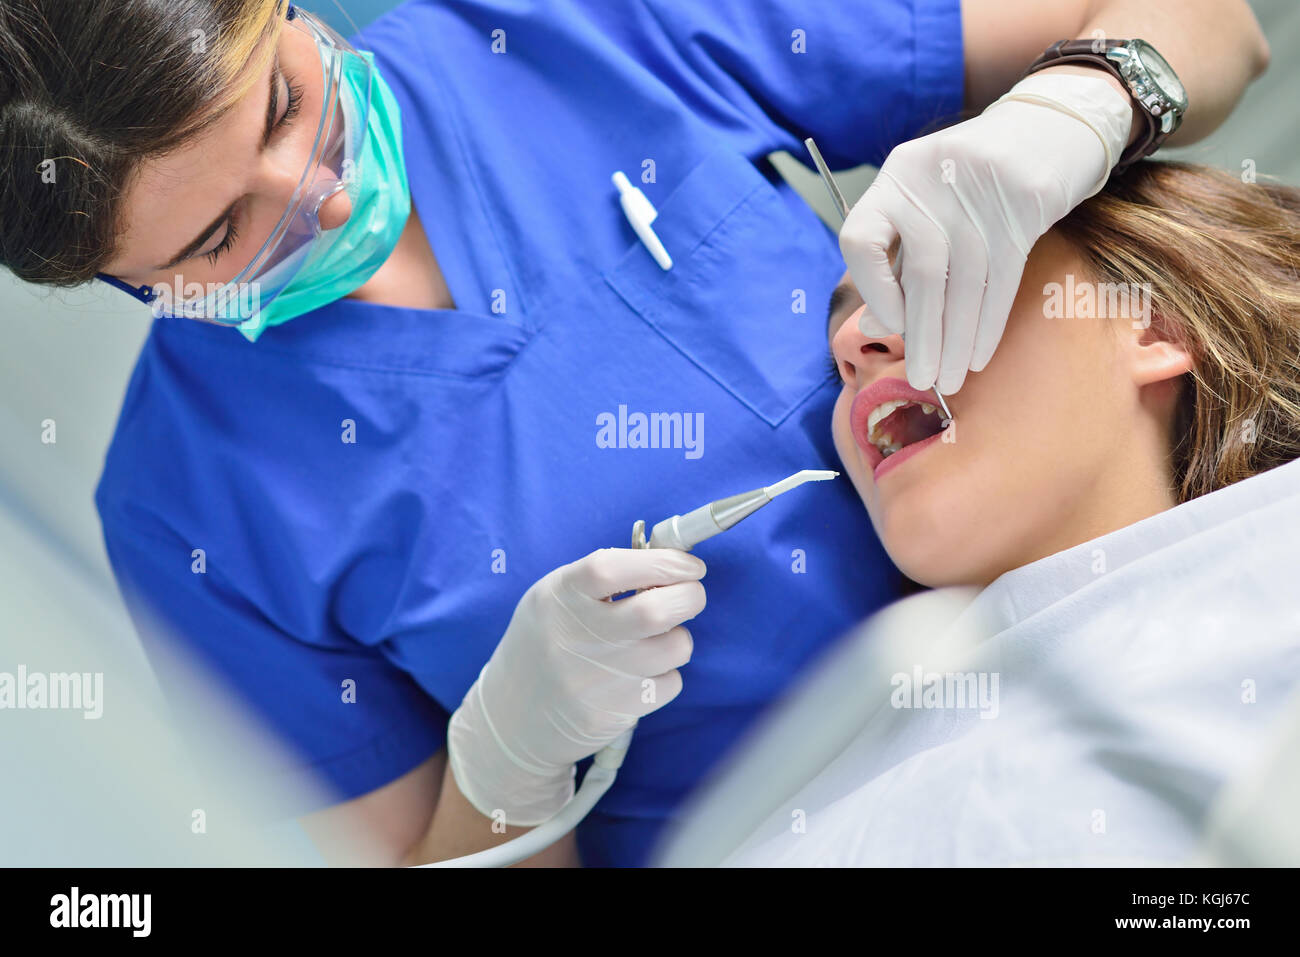 Les gens, de la médecine, de stomatologie et soins de santé - concept happy female patient contrôle dentiste dents fille Banque D'Images